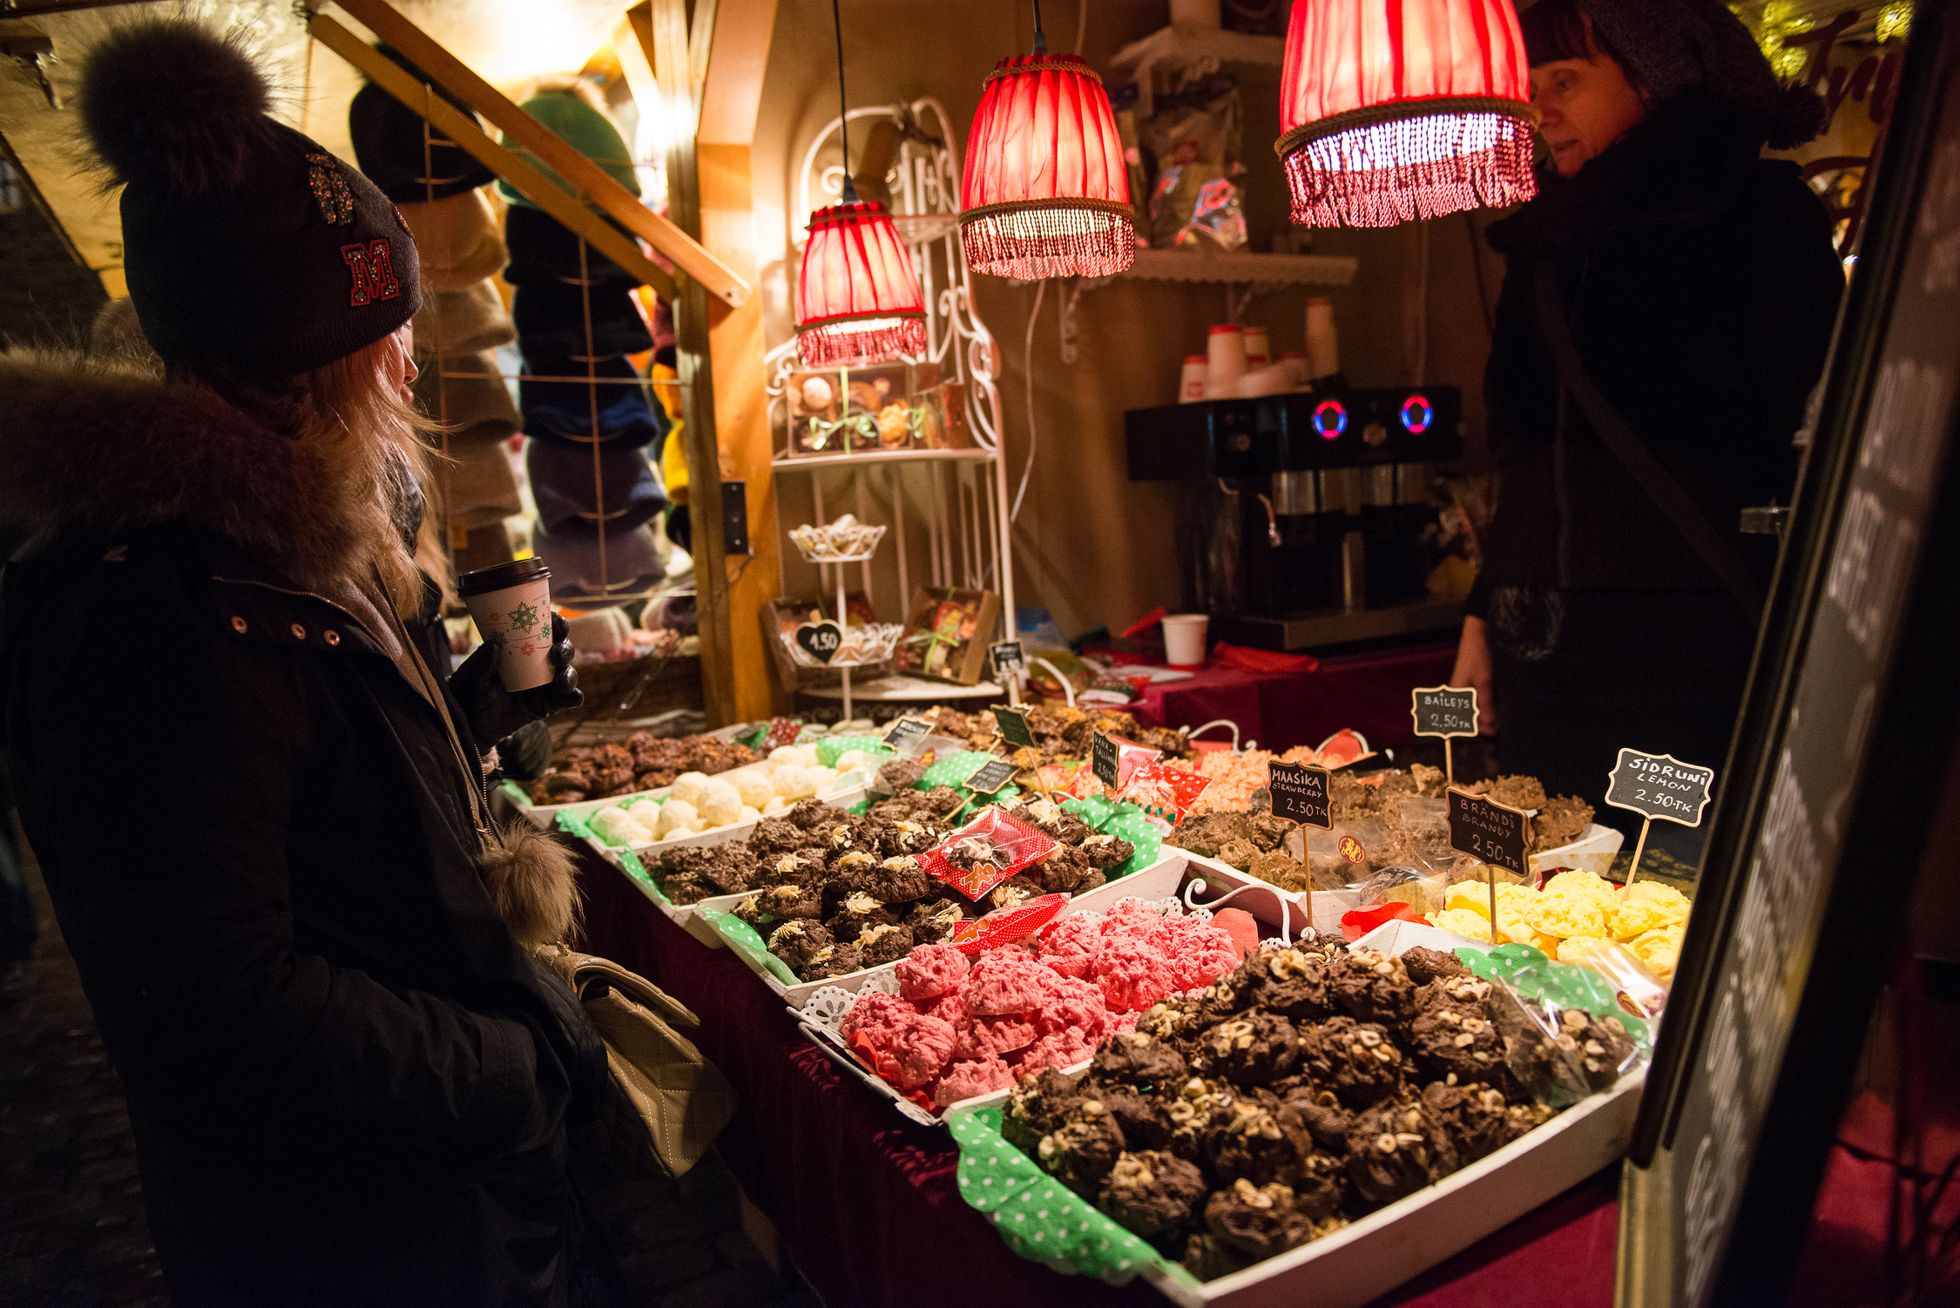 Jõuluturul on hea valik Eesti käsitööd. Pilt on illustratiivne.